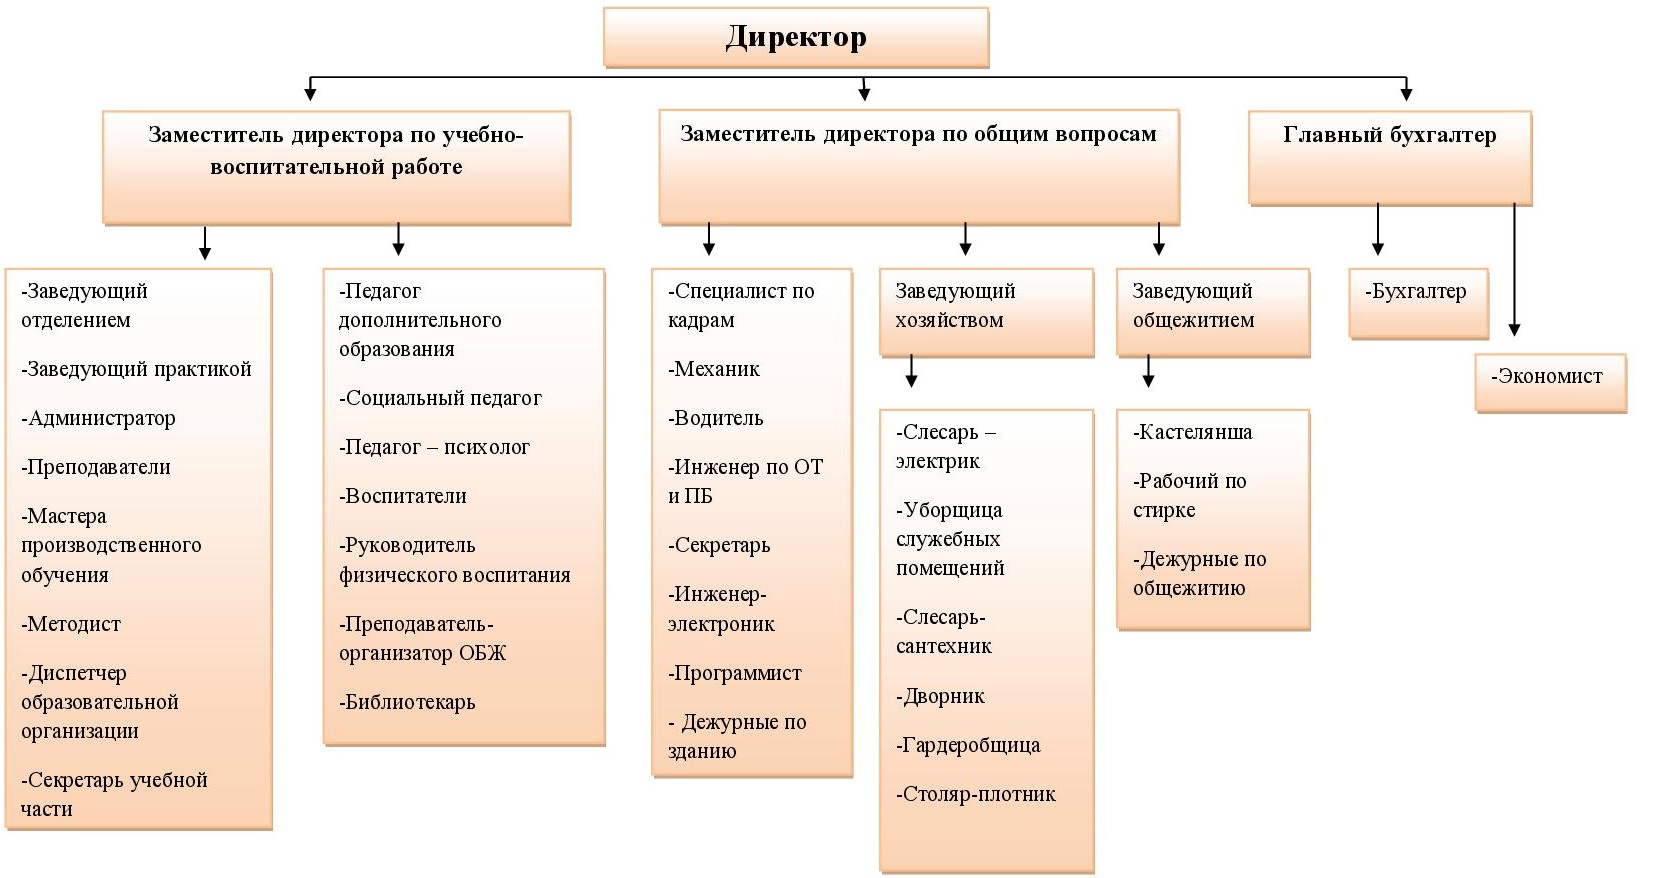 Организационная структура в ГБПОУ «Бологовский колледж»